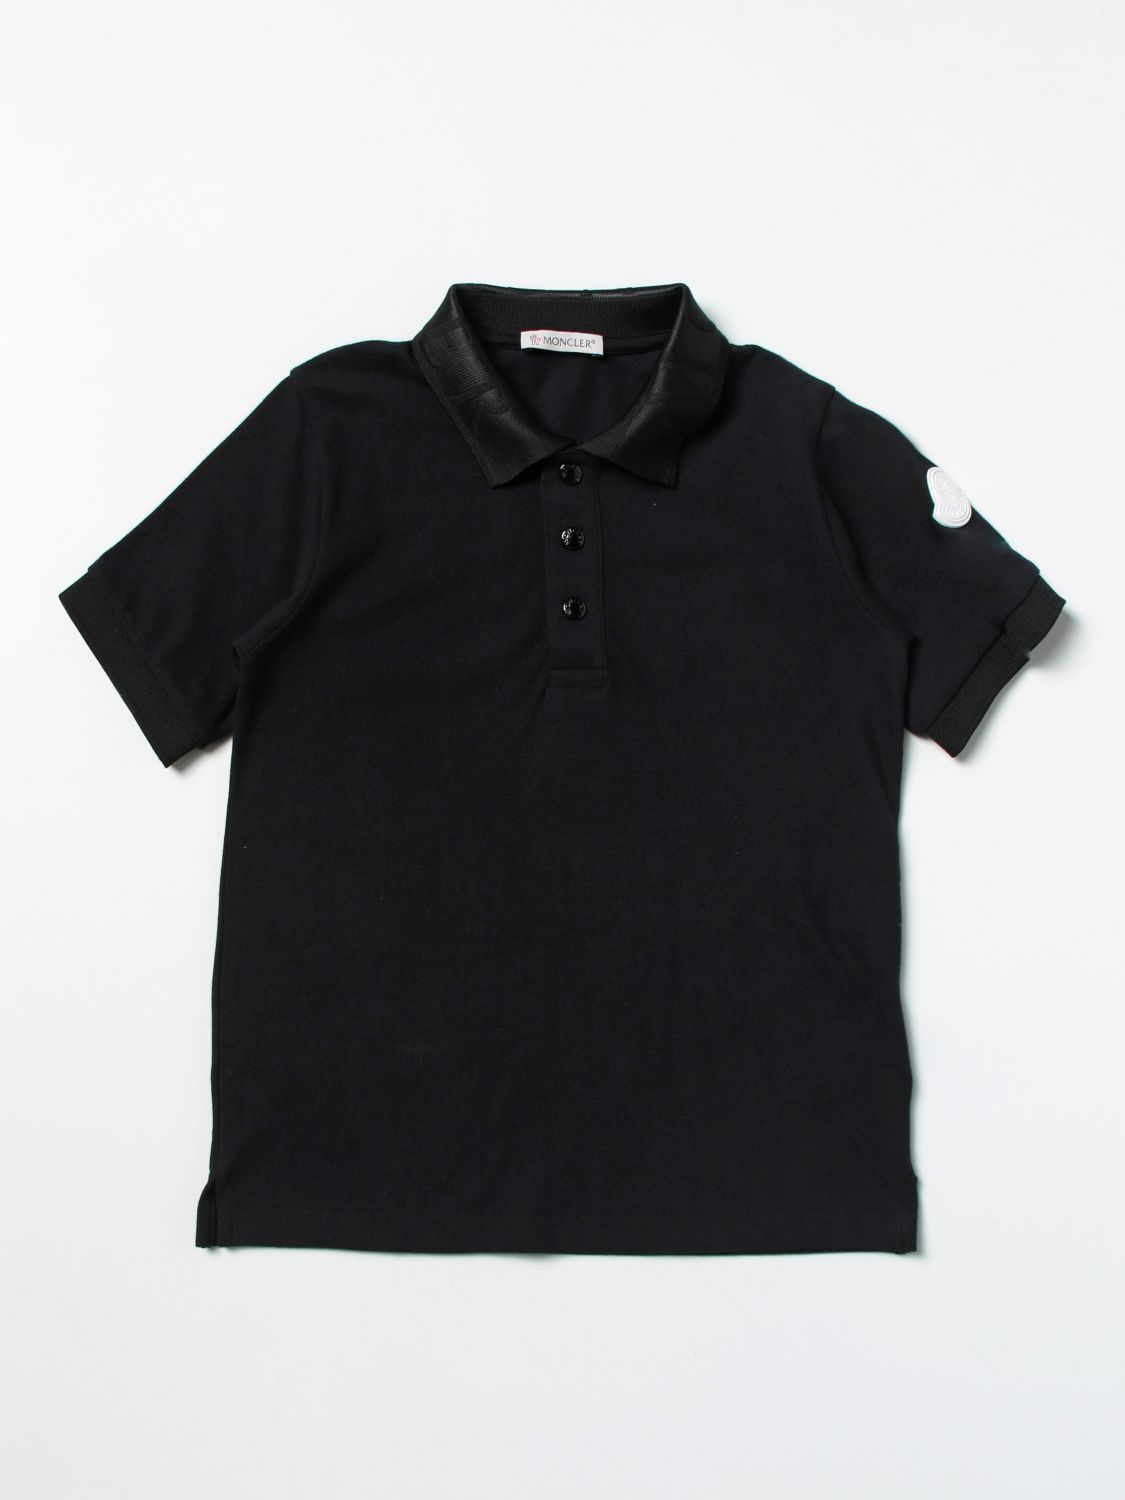 ポロシャツ モンクレール: ポロシャツ Moncler 男の子 ブラック 1